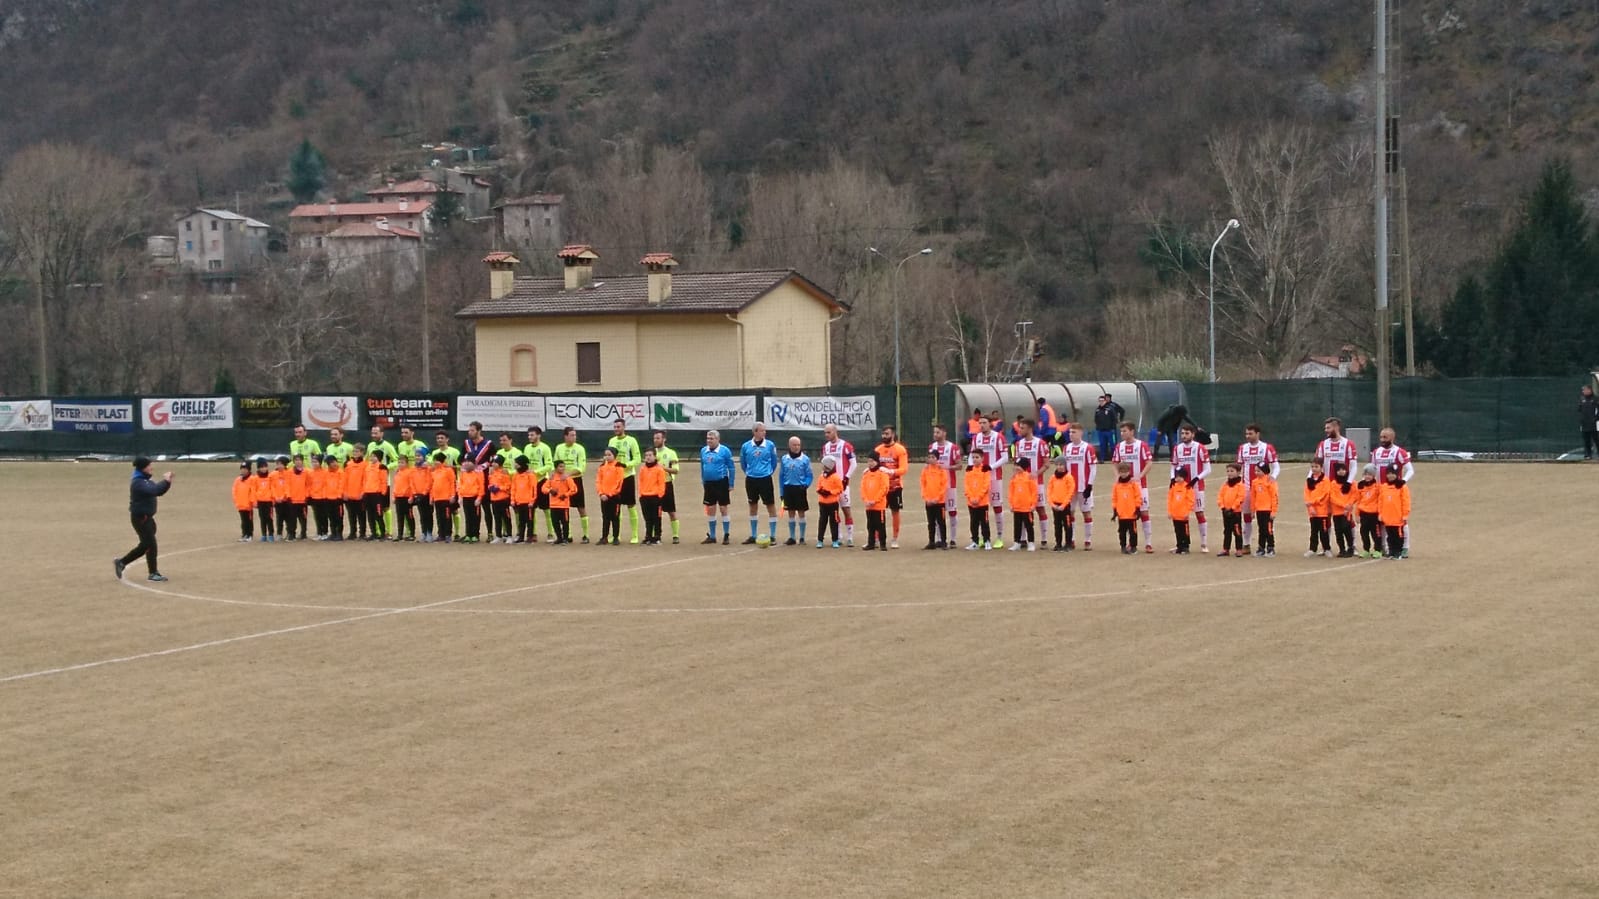 Football Valbrenta-L.R. Vicenza 0-1